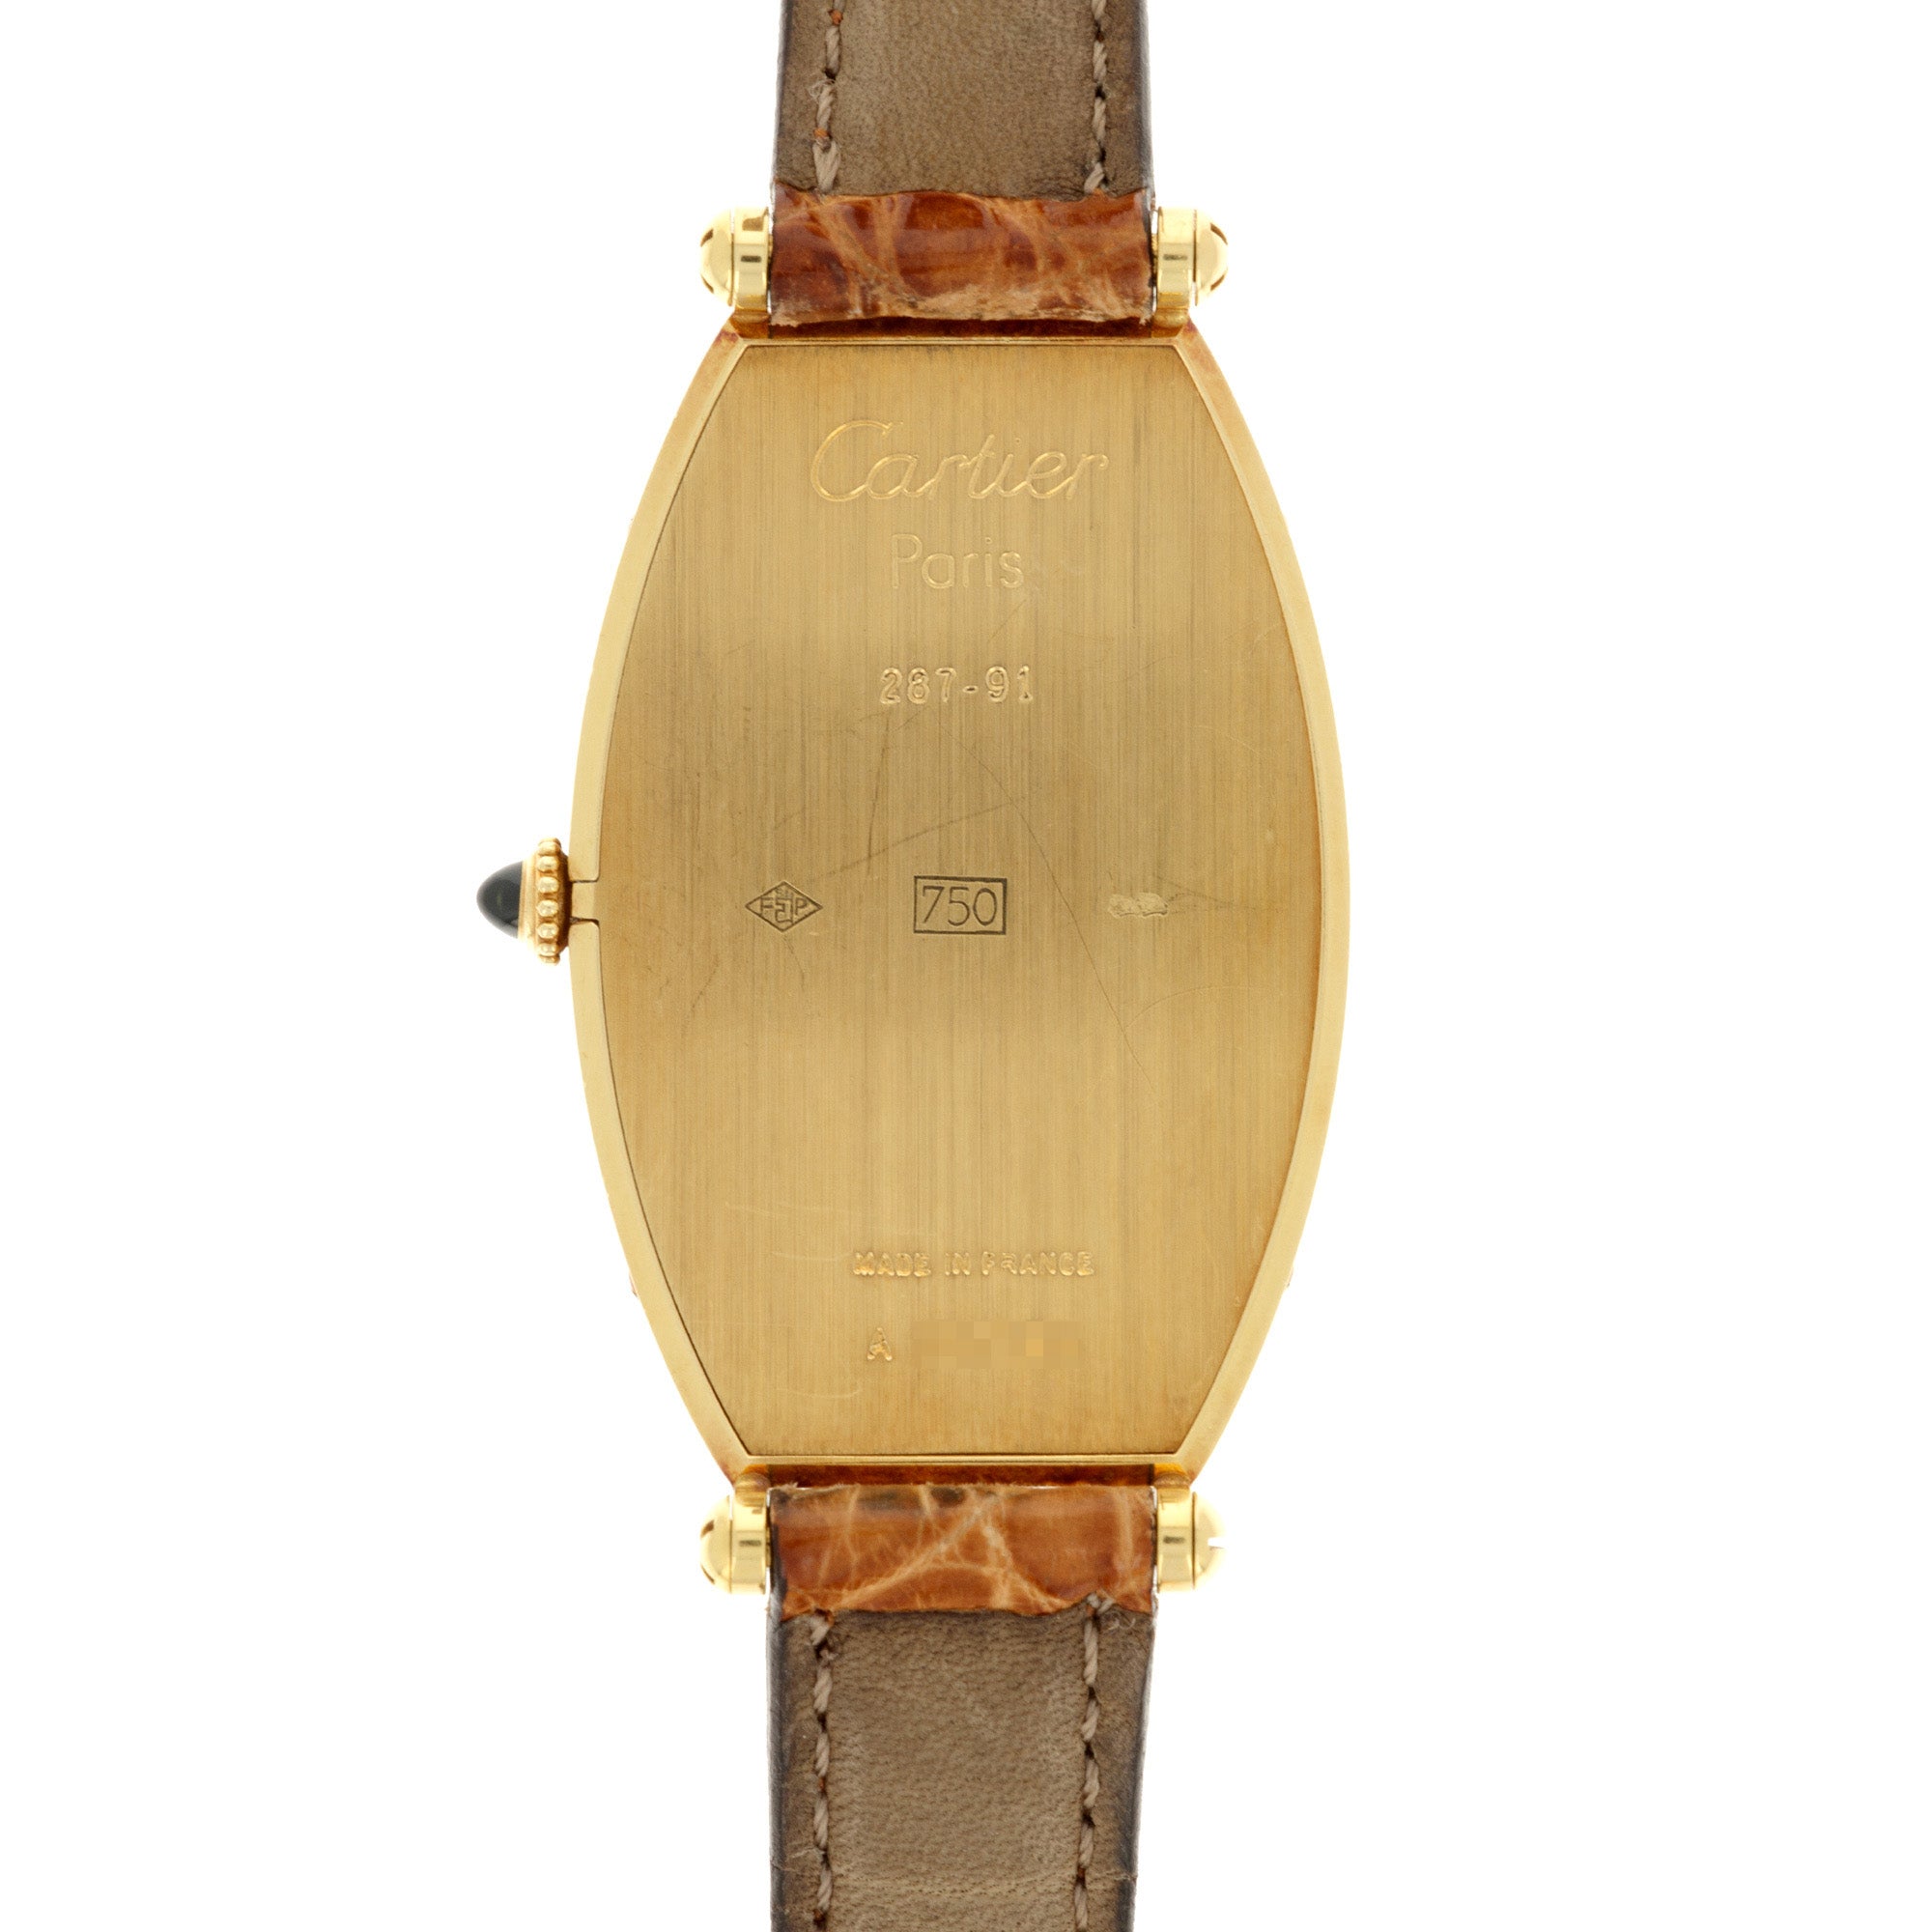 Cartier - Cartier Paris Yellow Gold Tonneau Mechanical Watch - The Keystone Watches